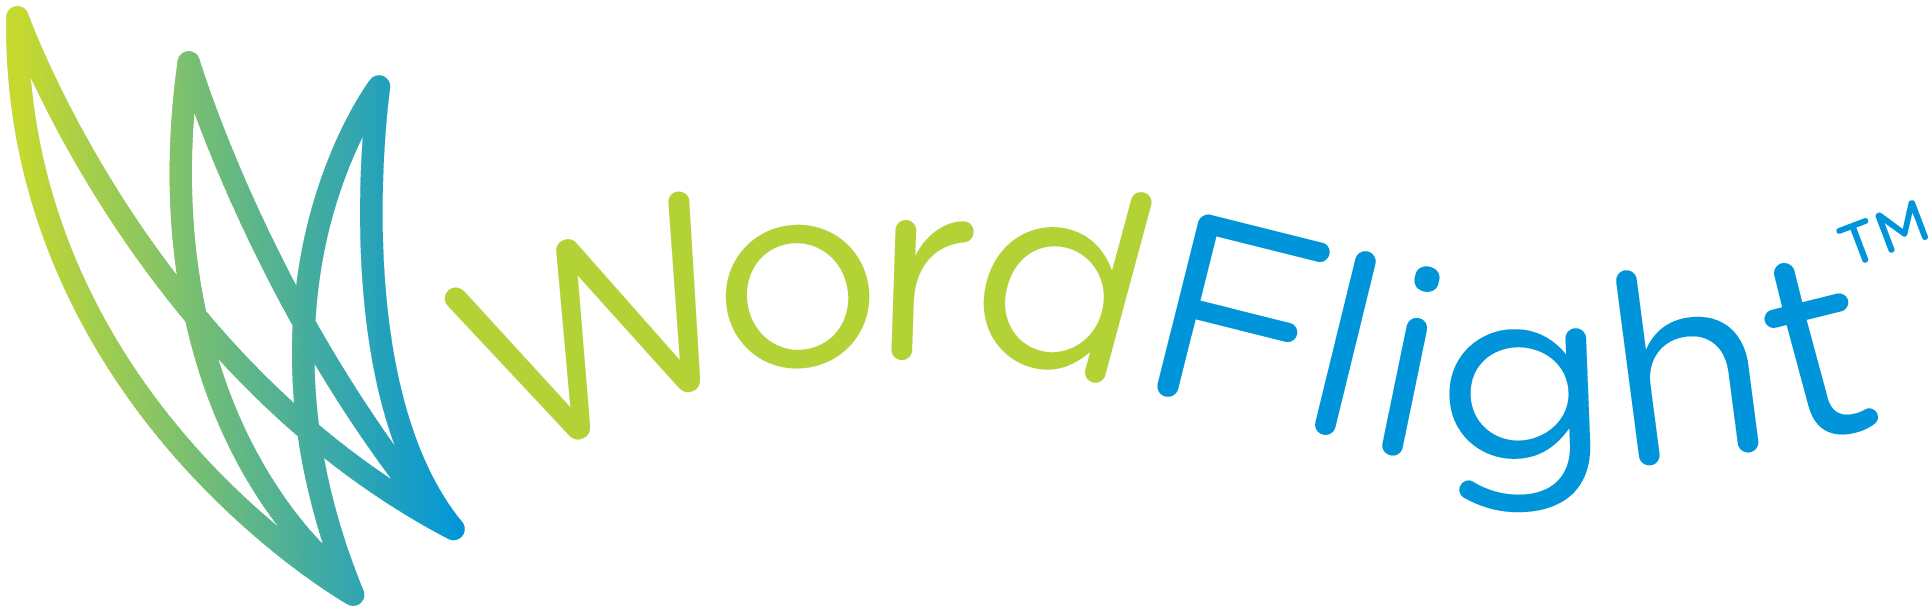 Word_Flight_logo